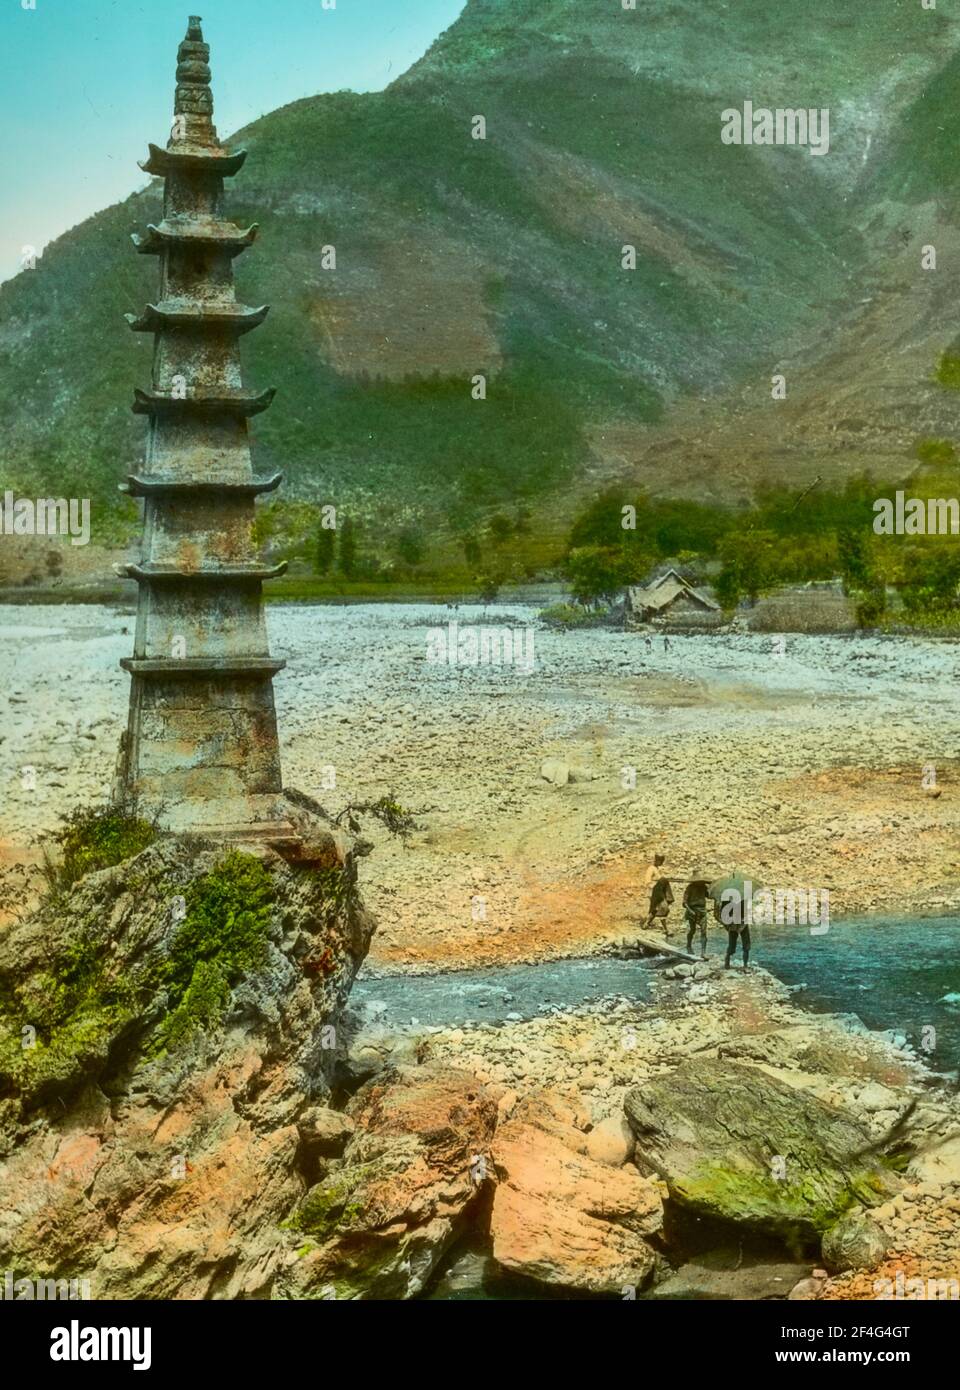 Trois personnes traversent un pont en planche sur une rivière partiellement sèche, par temps ensoleillé, pour atteindre une petite pagode construite sur un éperon rocheux, Sichuan, Chine, 1917. De la collection de photographies Sidney D. Gamble. () Banque D'Images